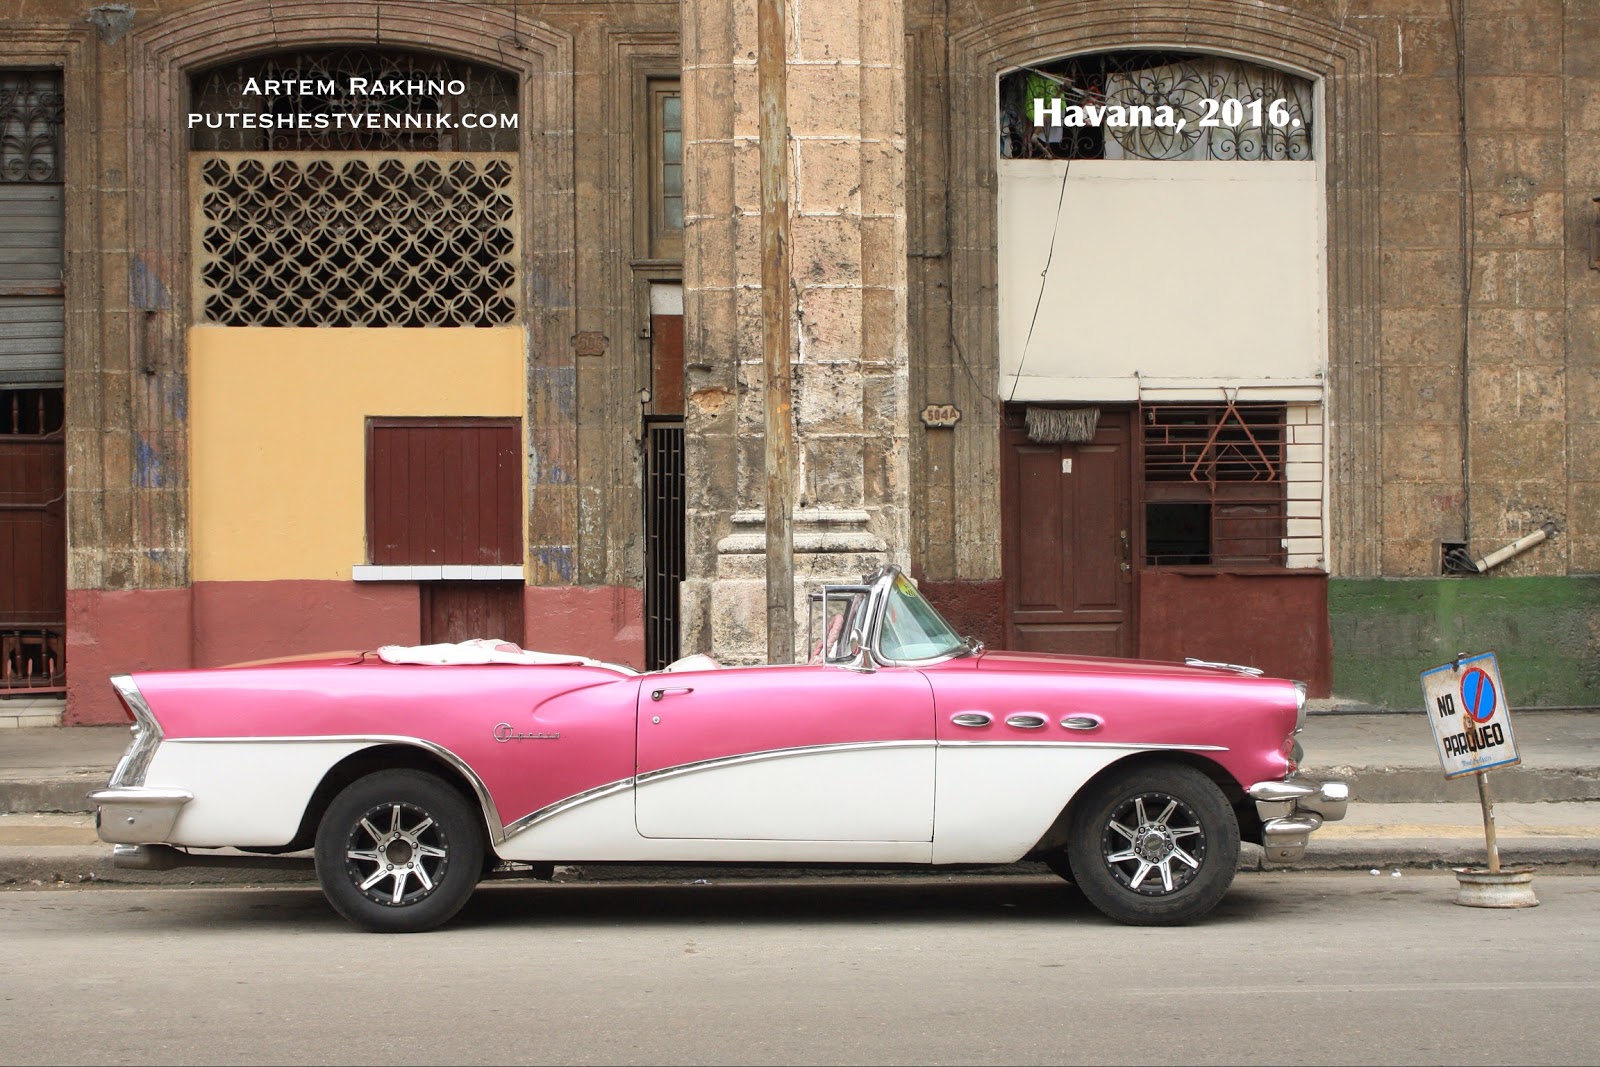 Кабриолет на улице в Гаване